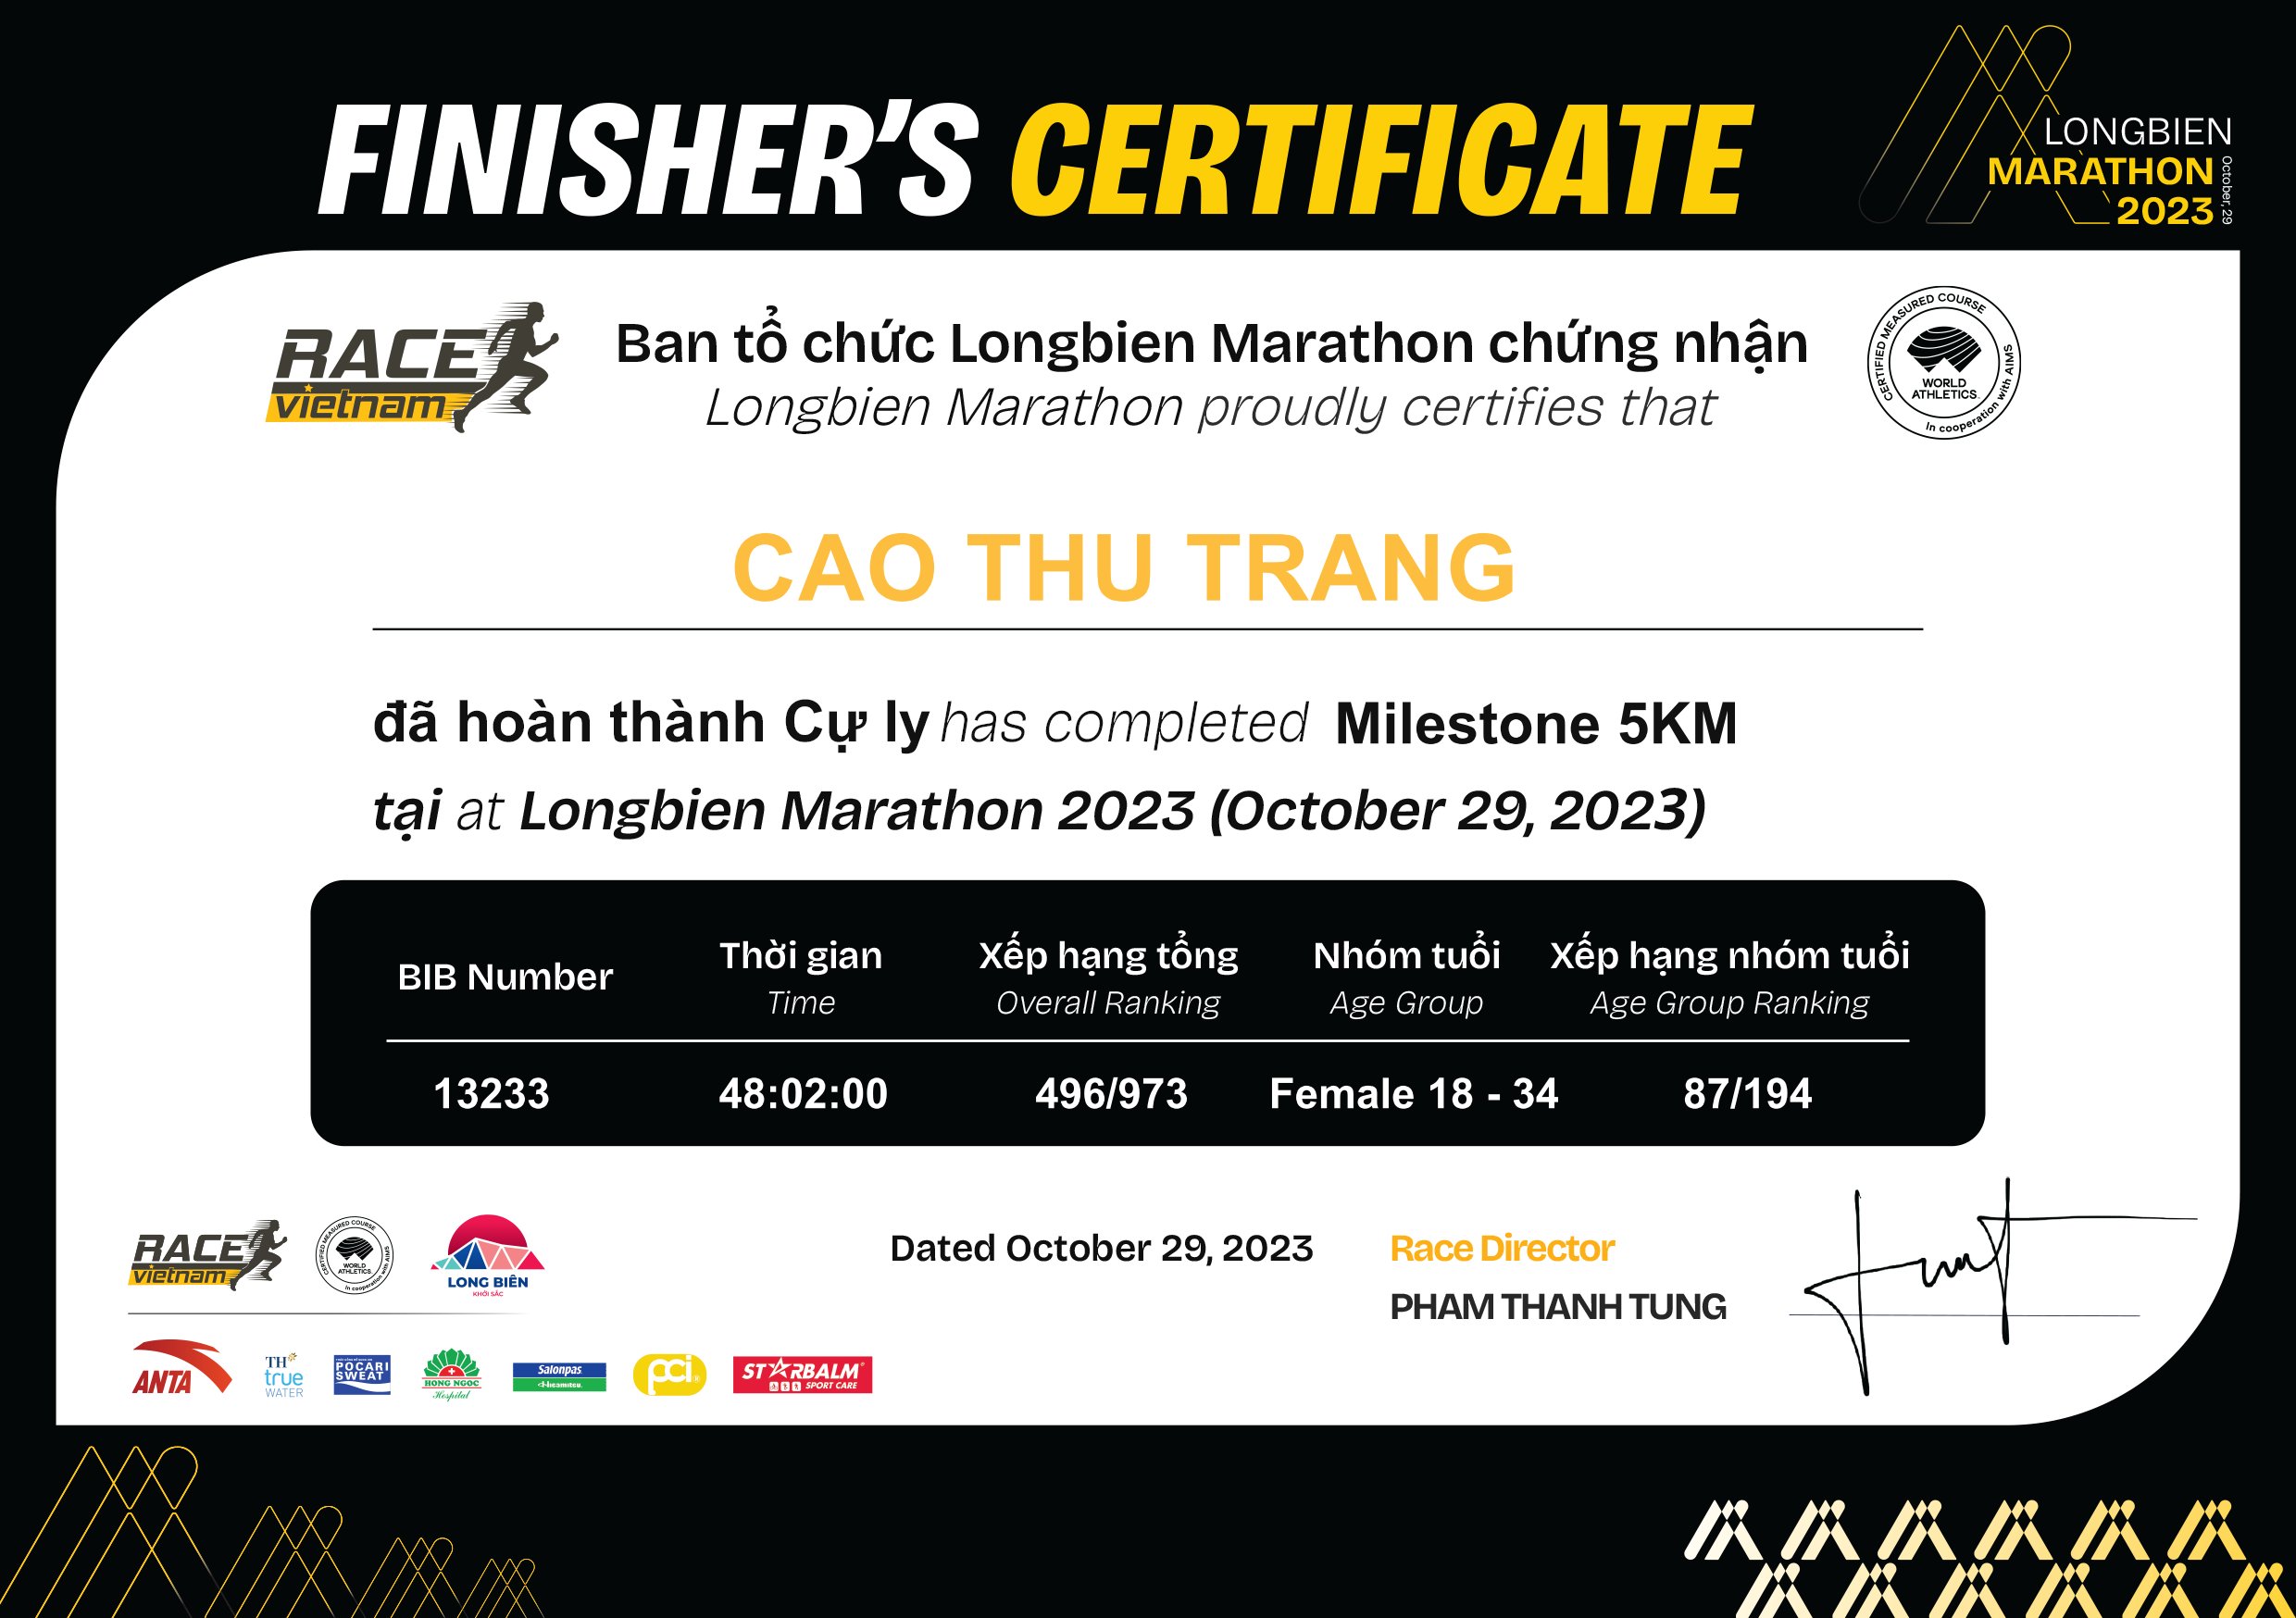 13233 - Cao Thu Trang